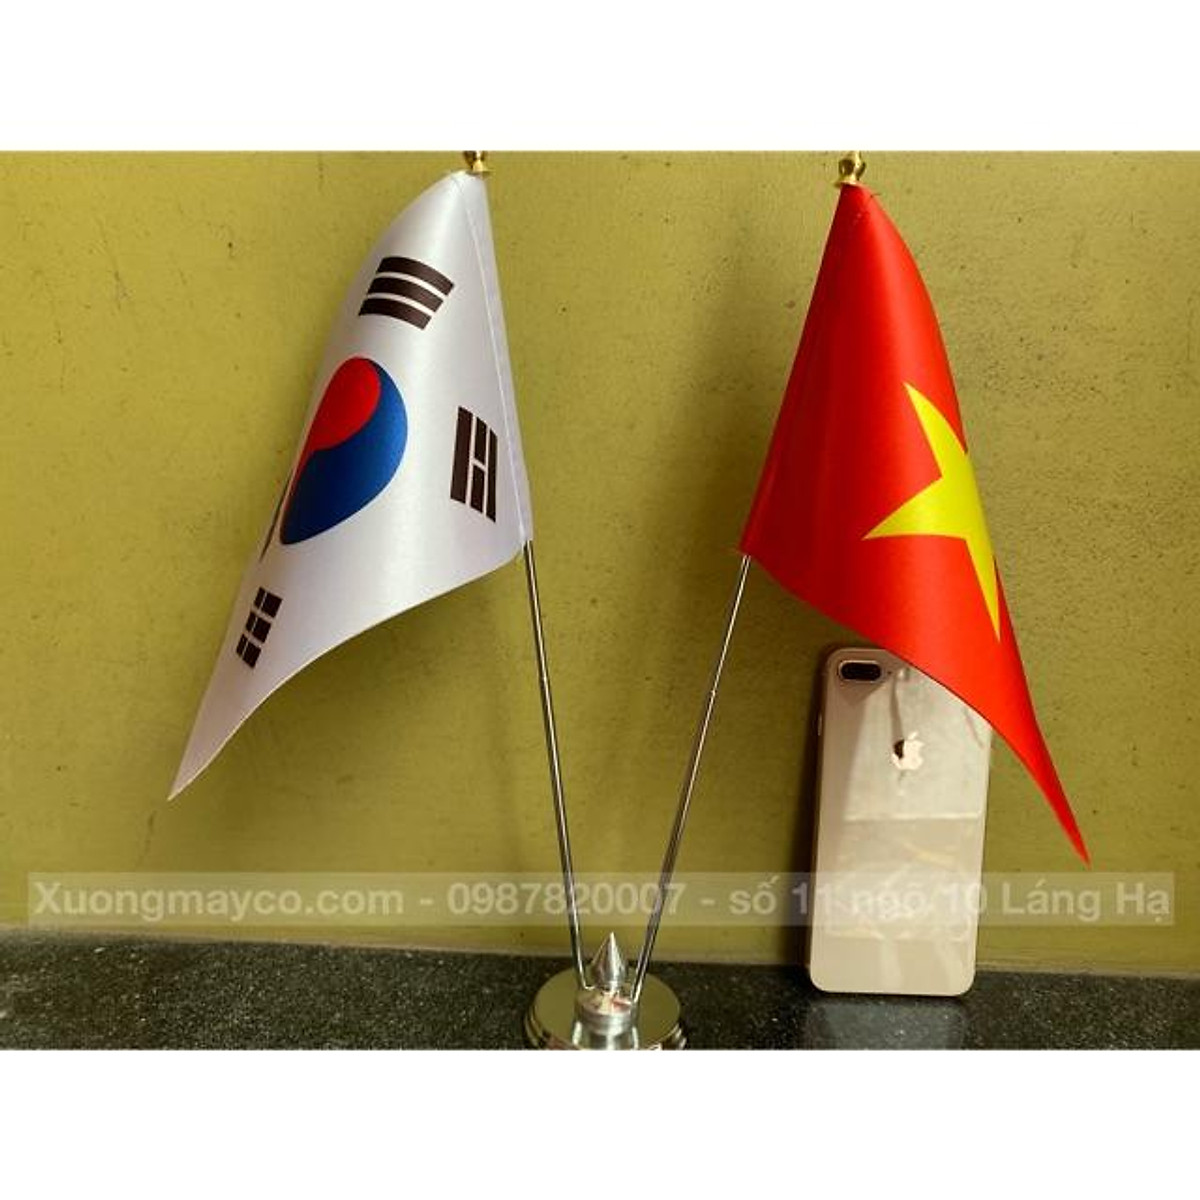 Cờ để bàn Việt Nam Hàn Quốc: Tại xưởng may cờ chúng tôi, chúng tôi có nhiều mẫu cờ để bàn Việt Nam - Hàn Quốc với chất liệu inox cao cấp và thiết kế sang trọng, đẹp mắt. Cờ để bàn là món quà ý nghĩa, đem lại niềm tự hào cho cả hai nước.